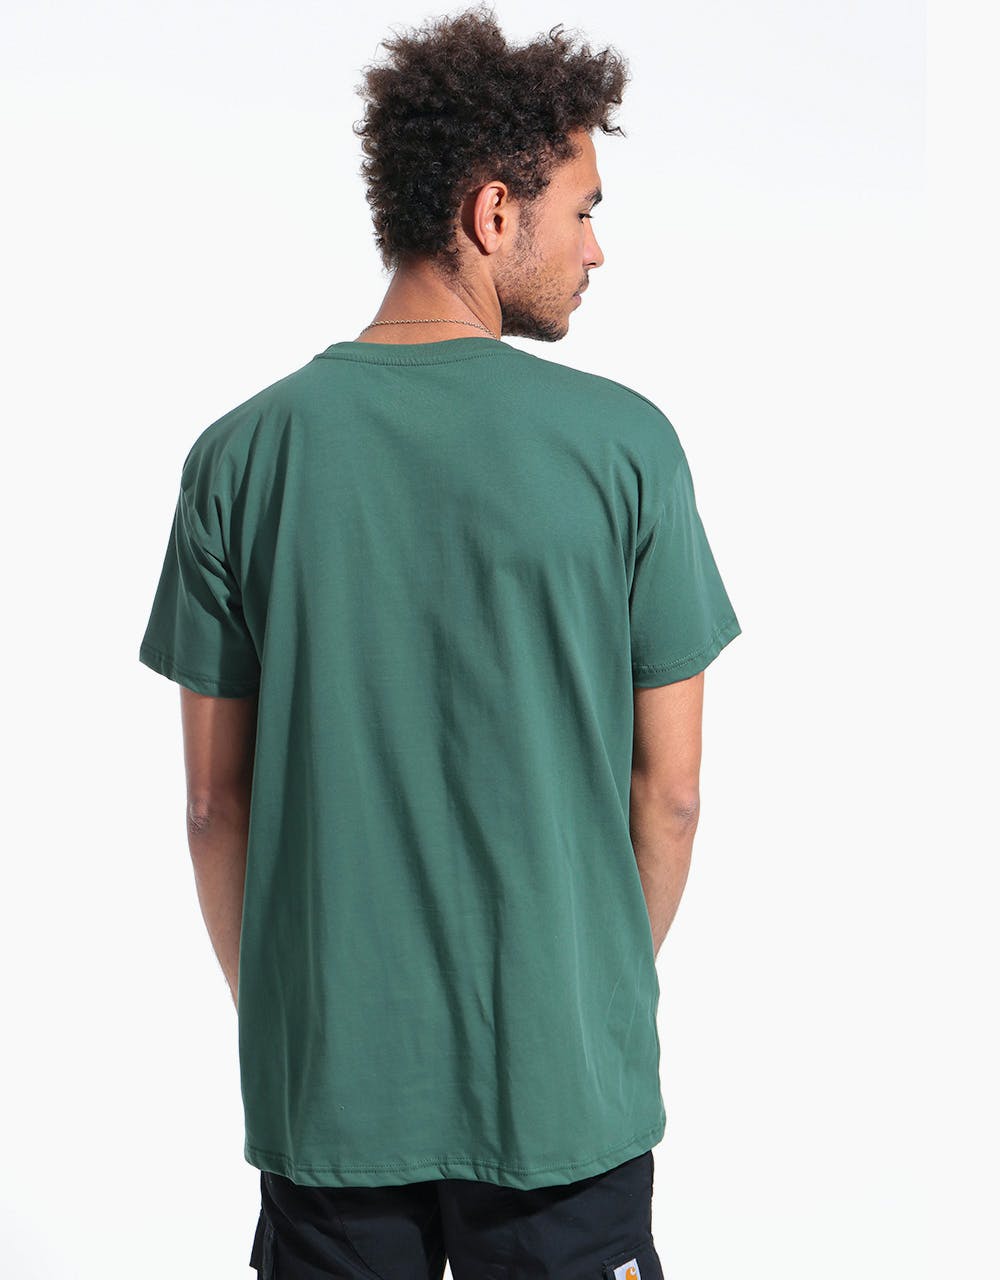 Magenta Cranes T-Shirt - Green